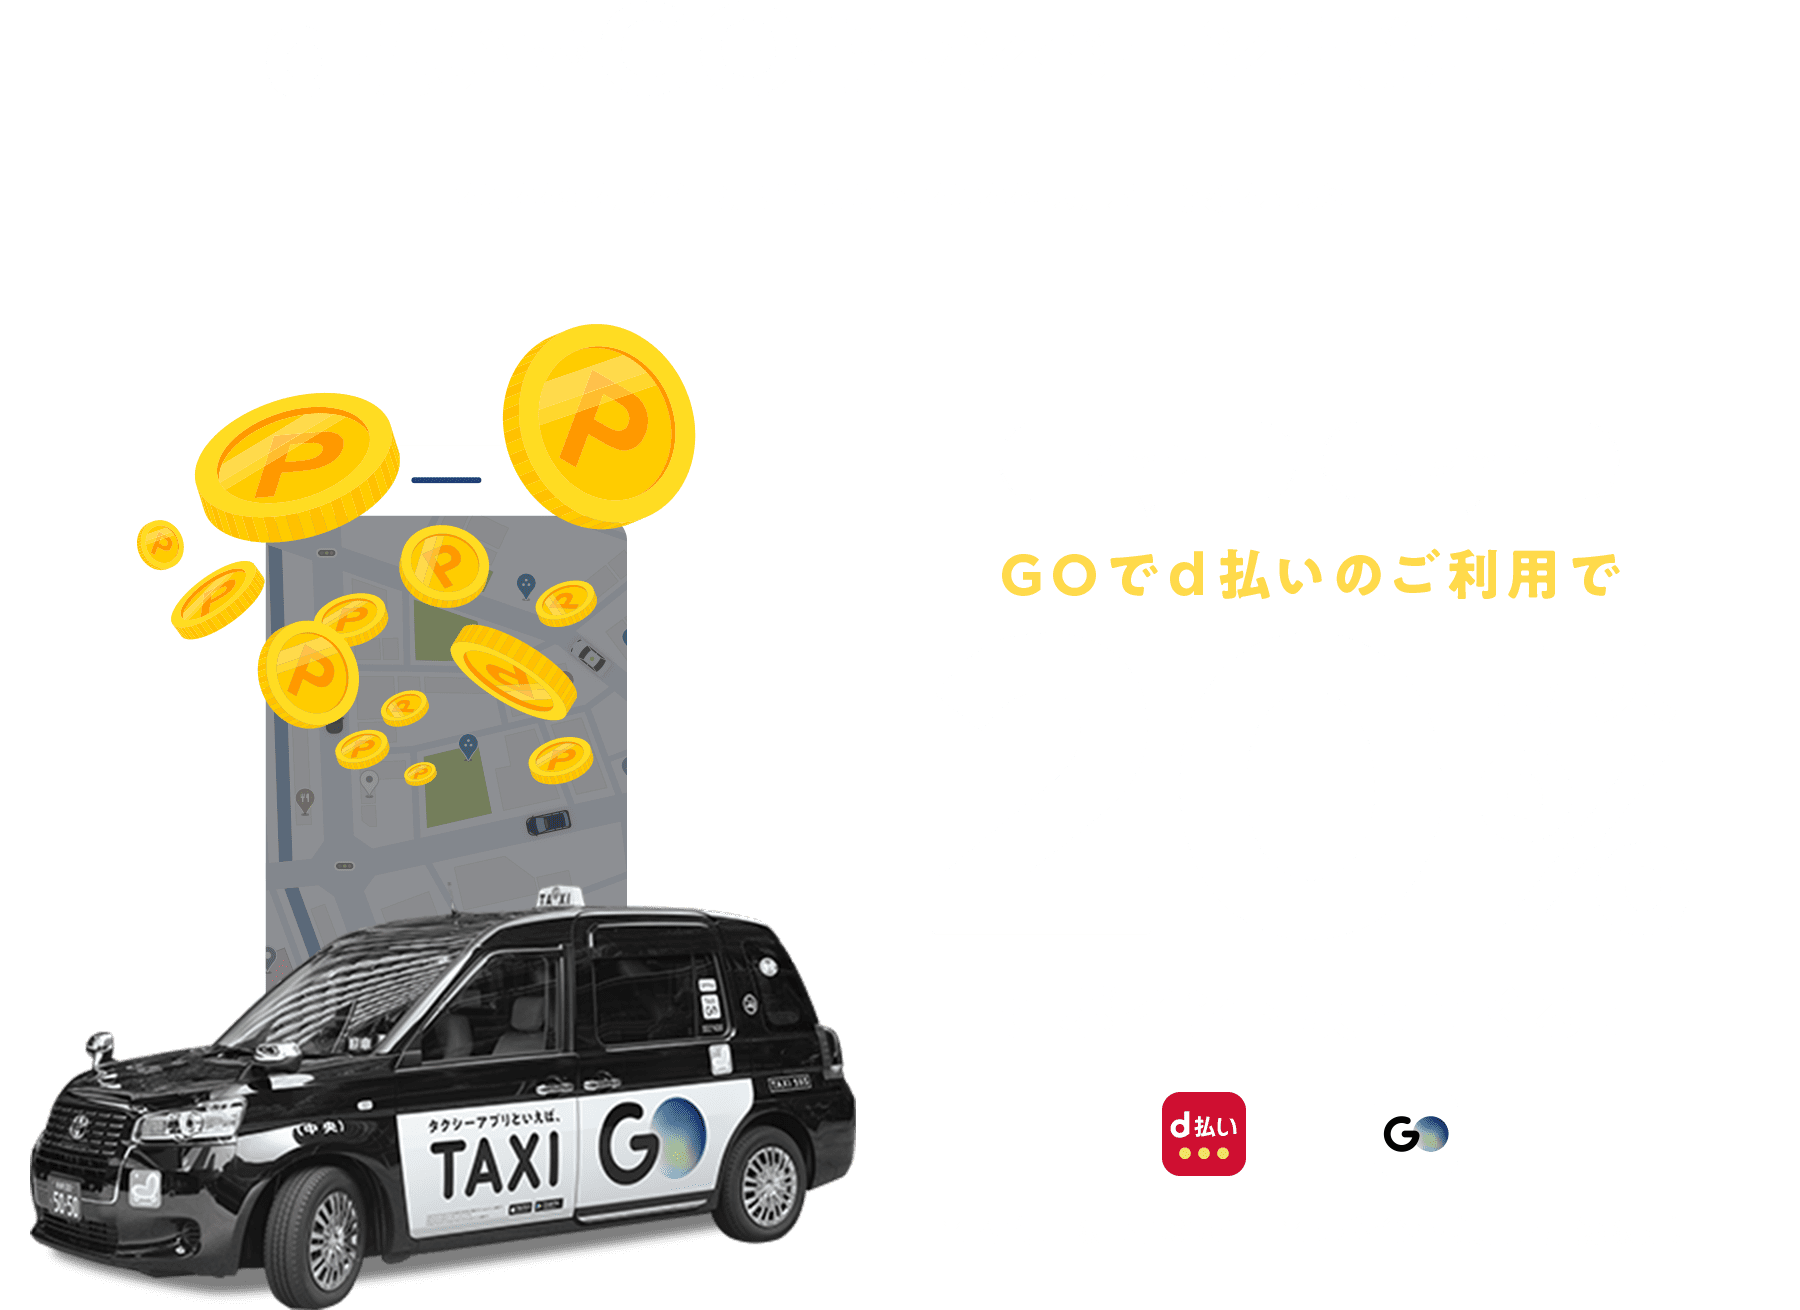 タクシー配車アプリGoでd払いで20％dポイントバック。～5/31。